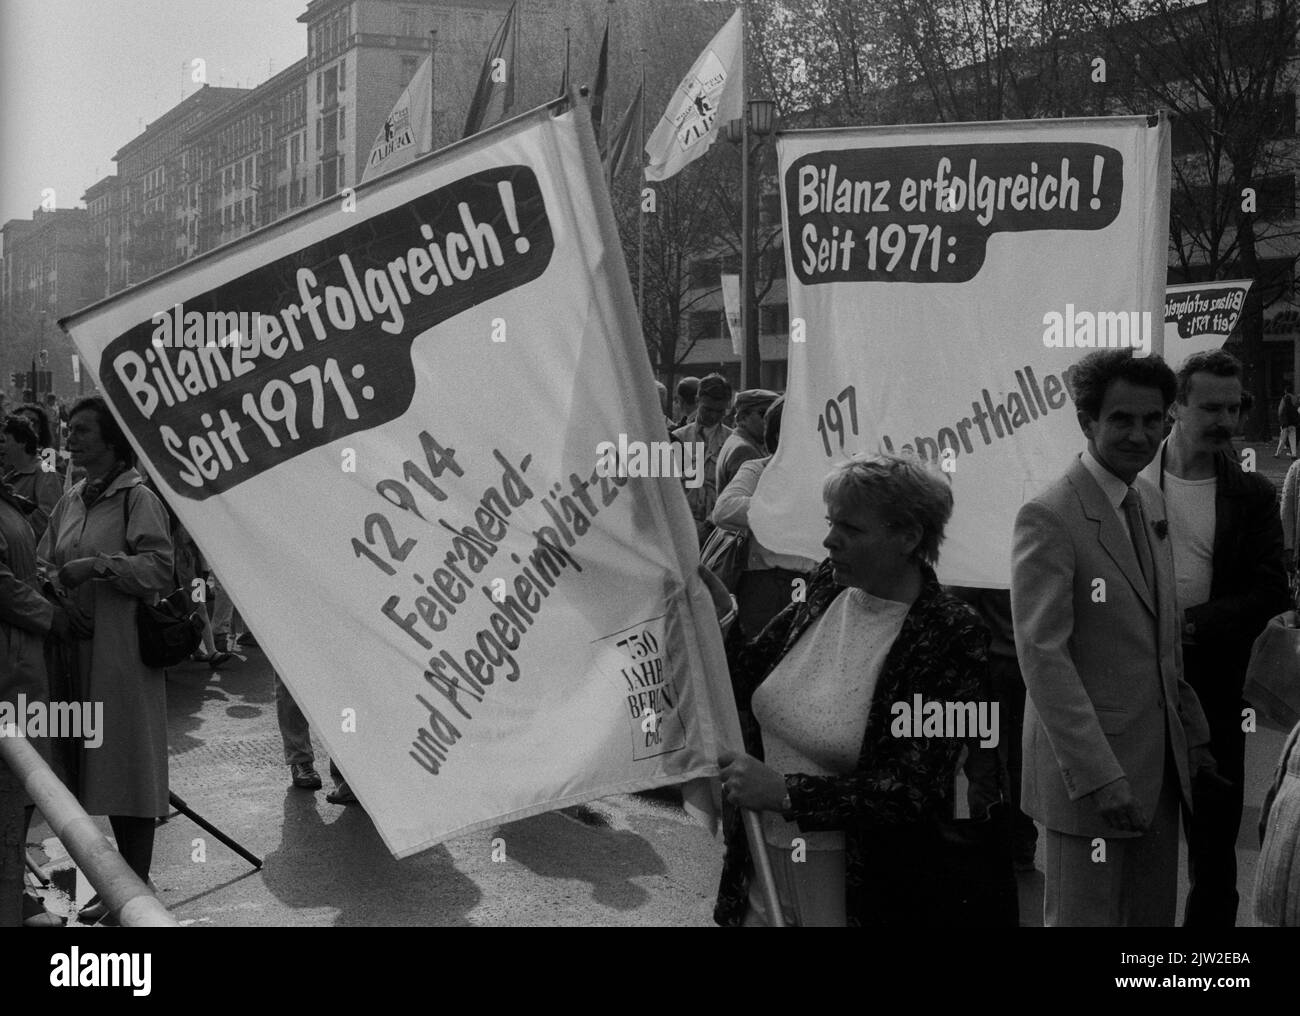 GDR, Berlino, 01. 05. 1987, 1. Mai Kundgebung 1987 auf der Karl-Marx-Allee, Bilanz erfolgreich, seit 1971 -12914 Feierabend, und Pflegeheimplaetze . . Foto Stock